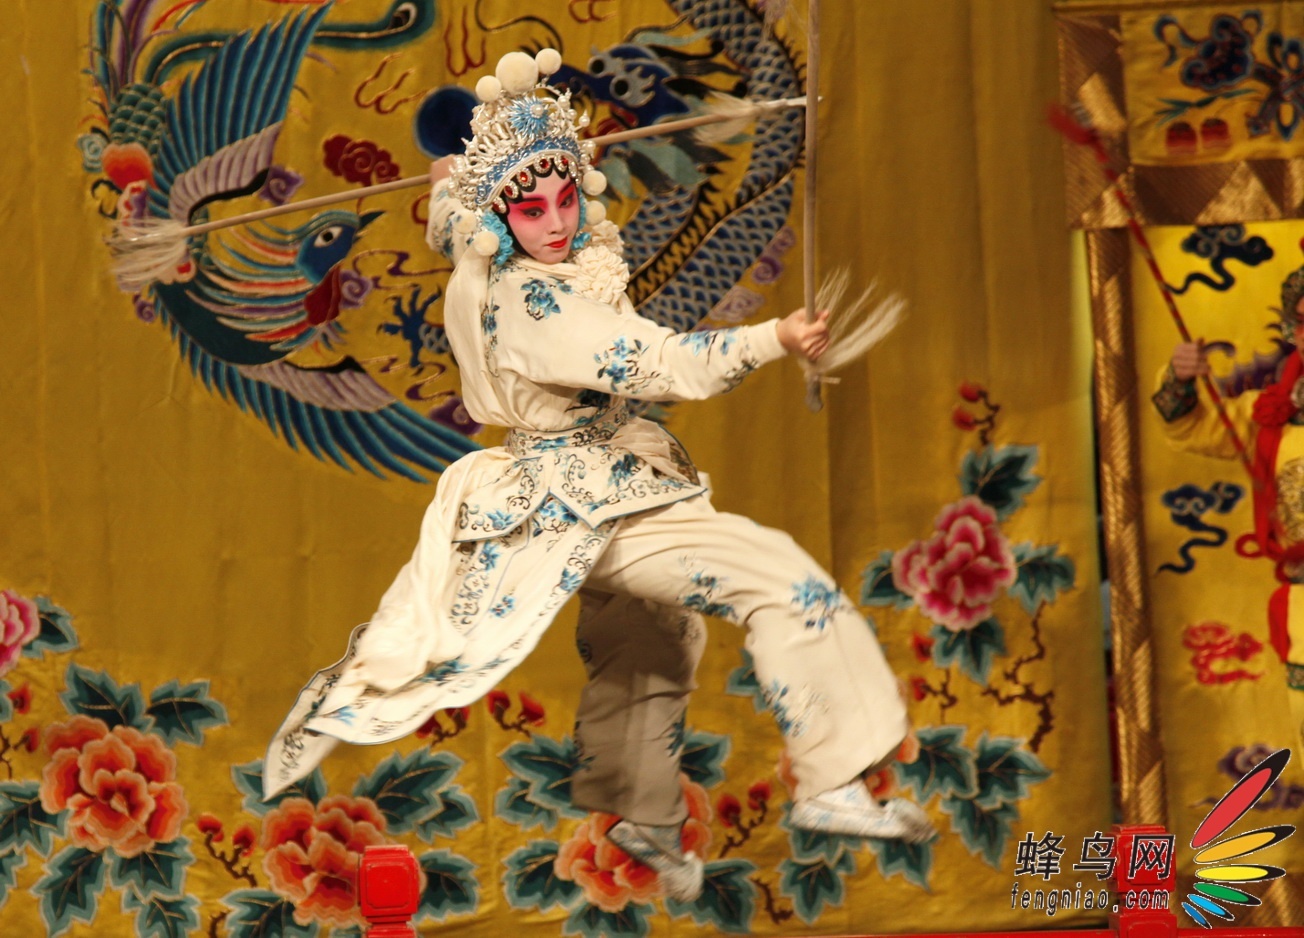 《穆桂英挂帅》,《天女散花》都是梅派演绎的代表剧目,而此次试拍